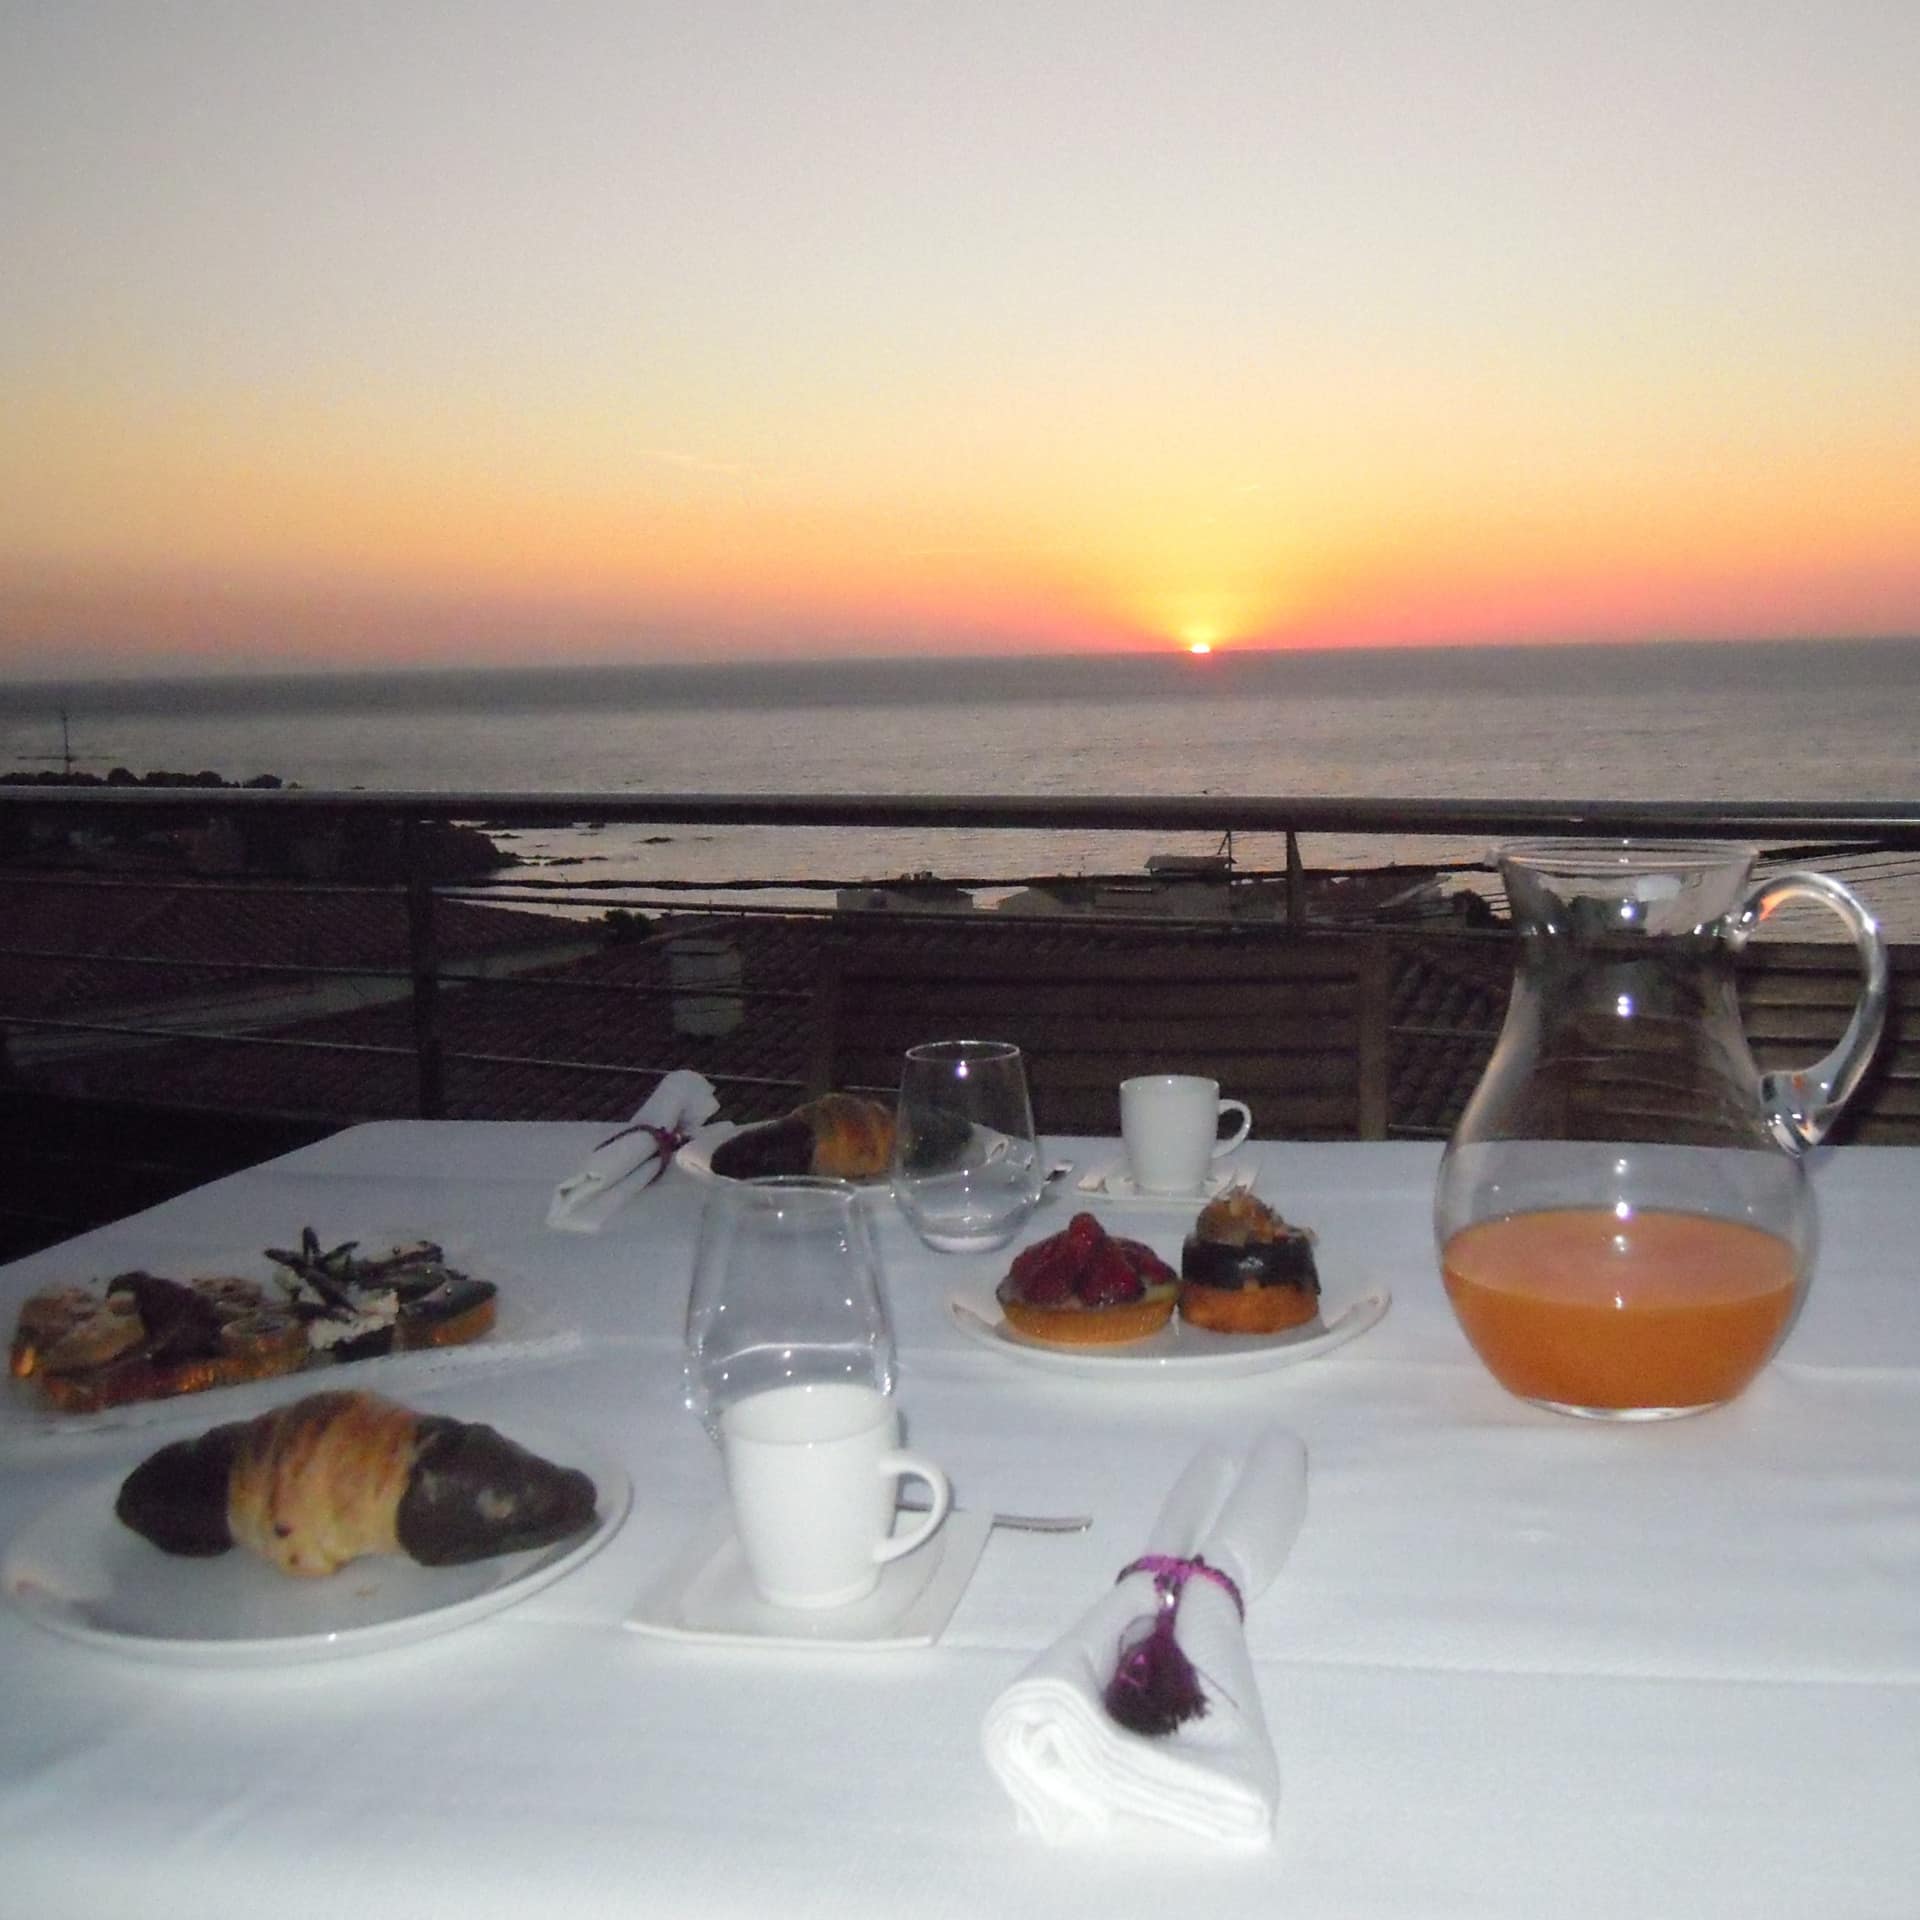 Ferienwohnung an der Costa Brava mit Balkon, darauf ein gedeckter Frühstückstisch und Blick auf den Sonnenaufgang